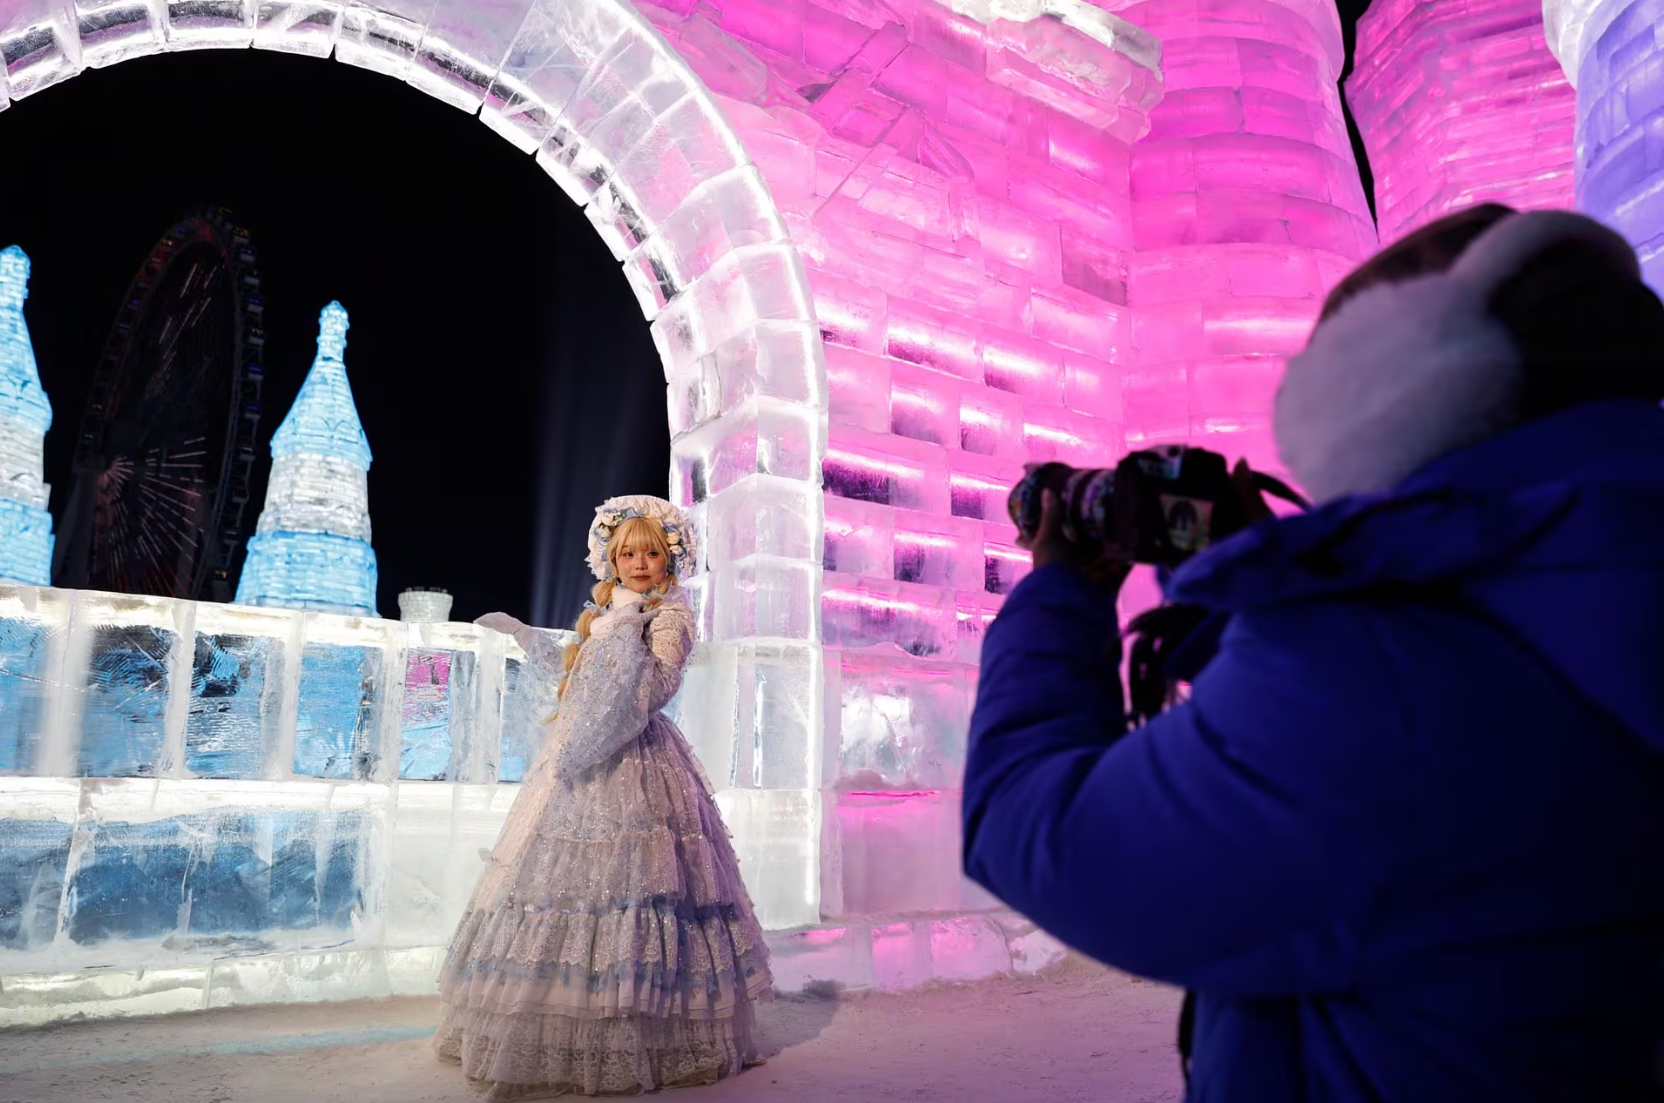 Một nữ du khách hóa trang và tạo dáng chụp hình trước cổng của tòa lâu đài băng - Ảnh: REUTERS